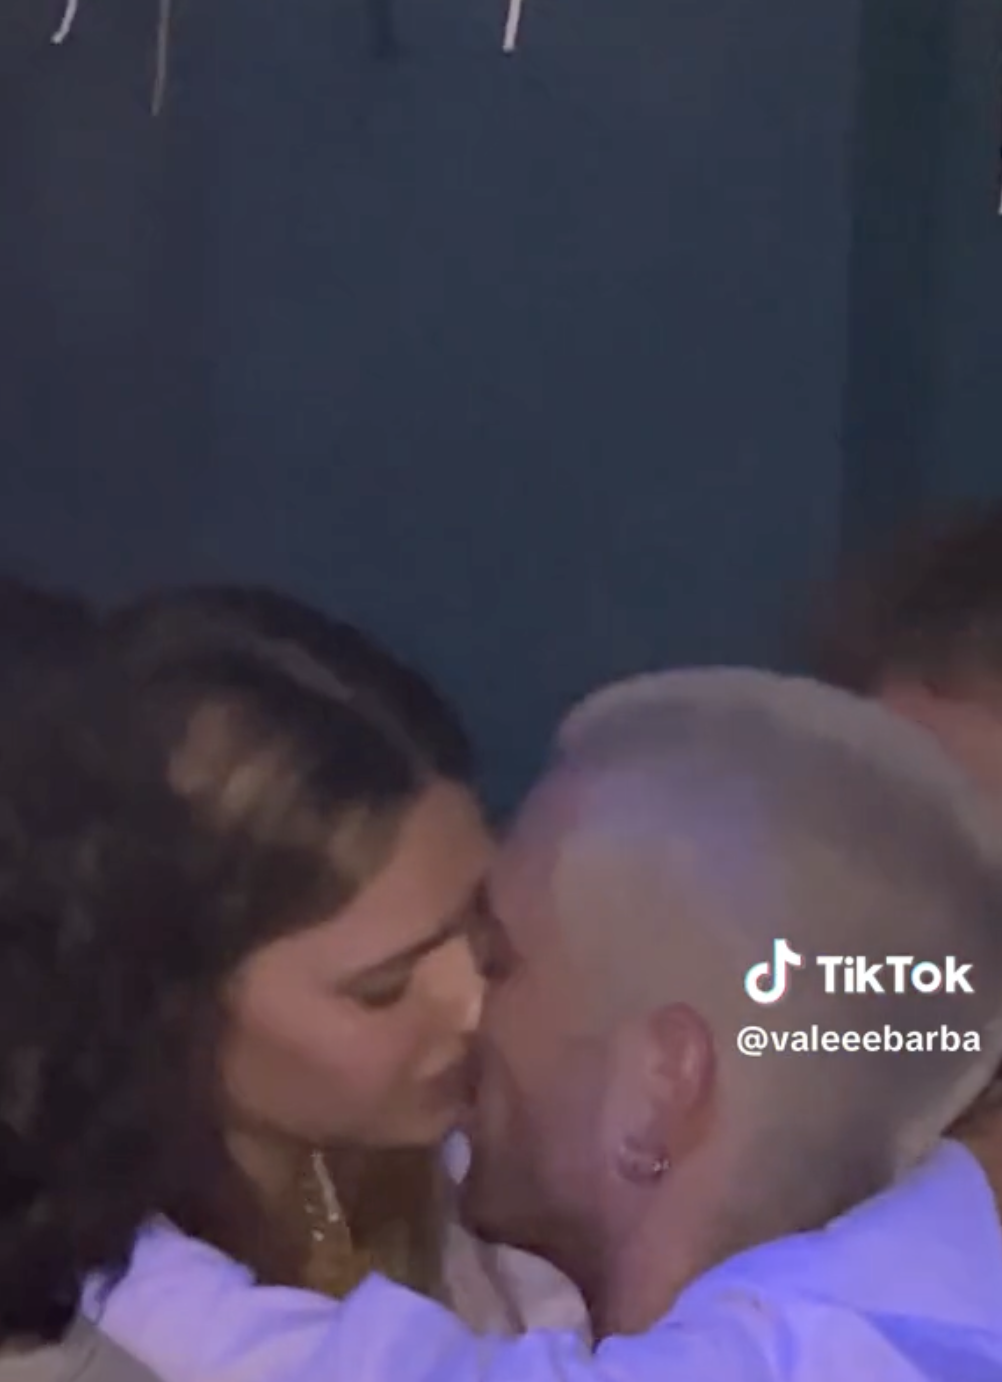 Фронтмен Måneskin попал в громкий скандал из-за поцелуя в клубе не со своей девушкой: вокалист объяснил, что между ними произошло